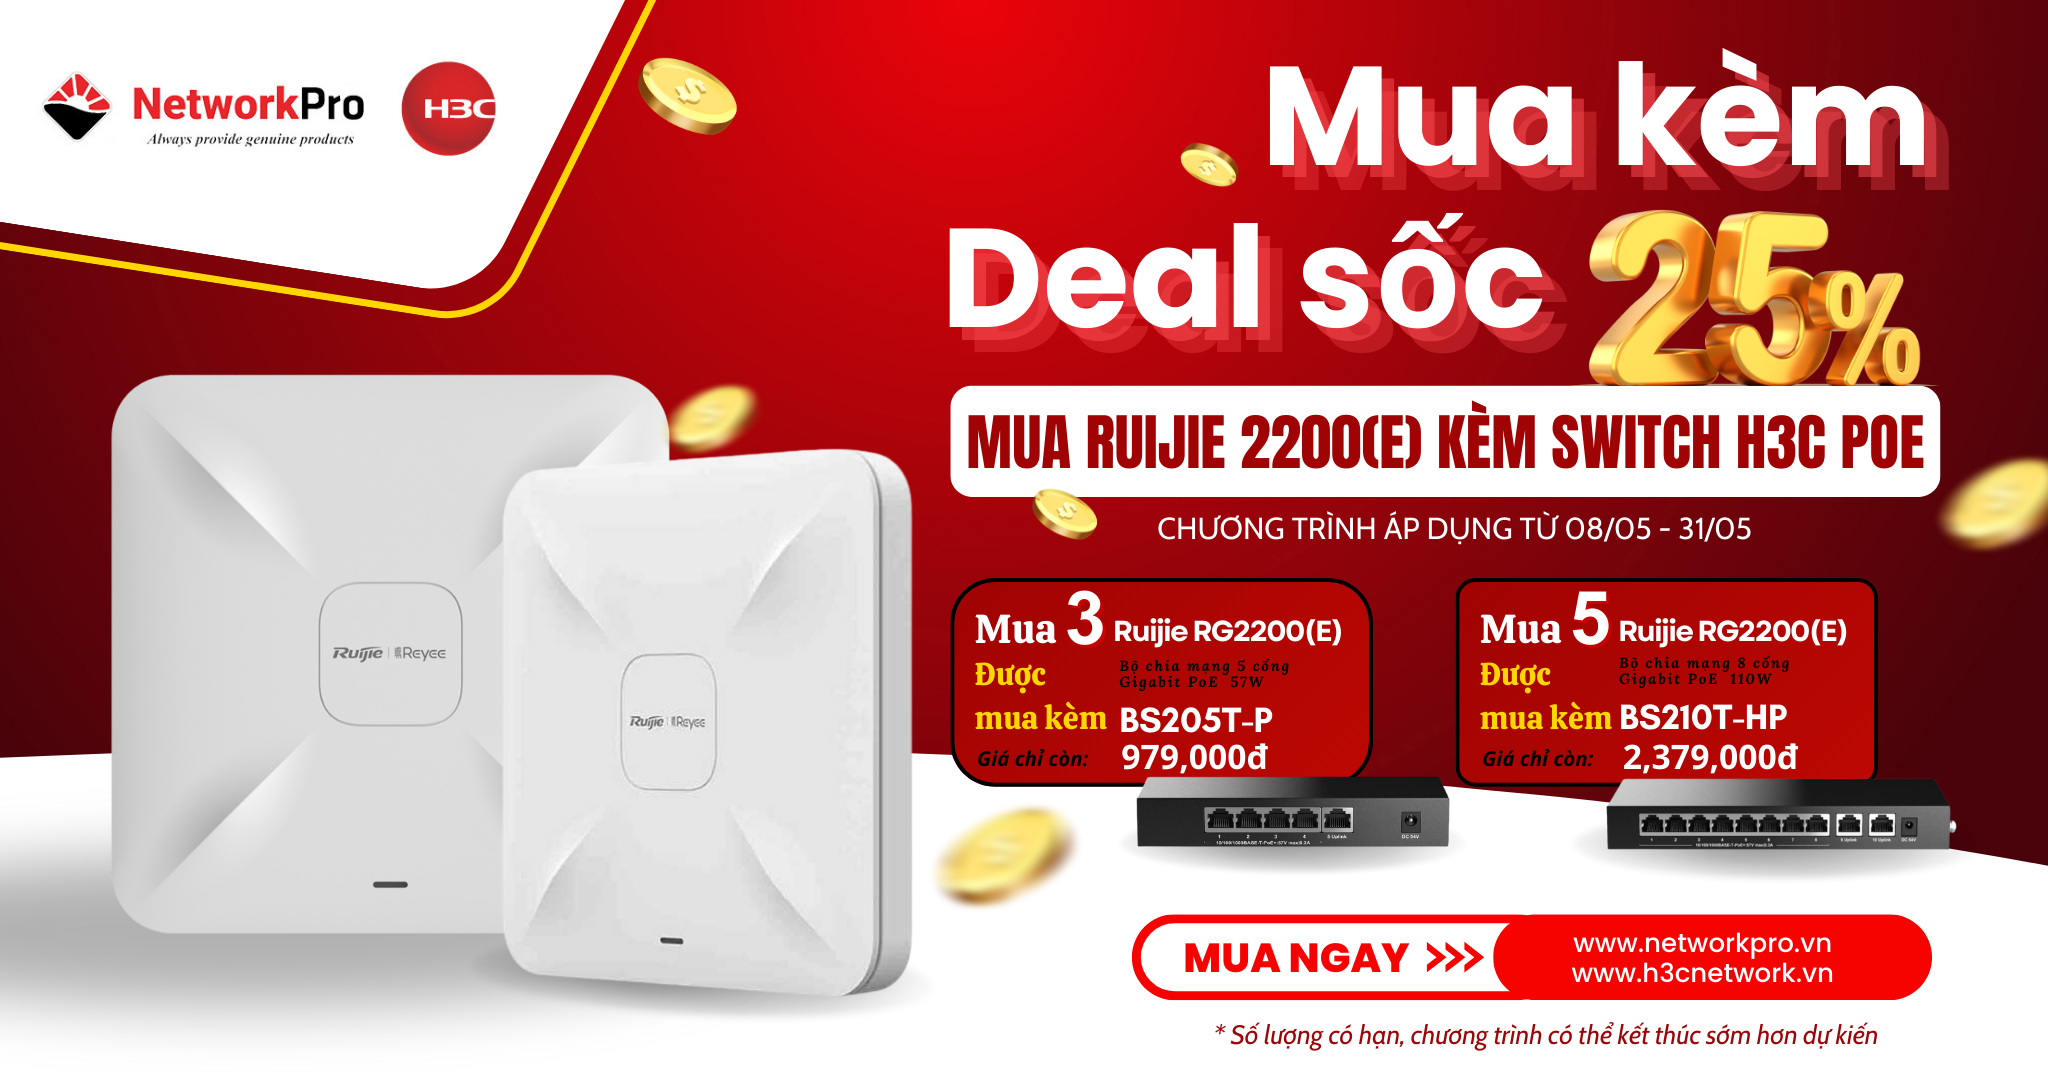 Mua kèm deal sốc - Mua wifi Ruijie được mua kèm Switch H3C giảm giá 25%